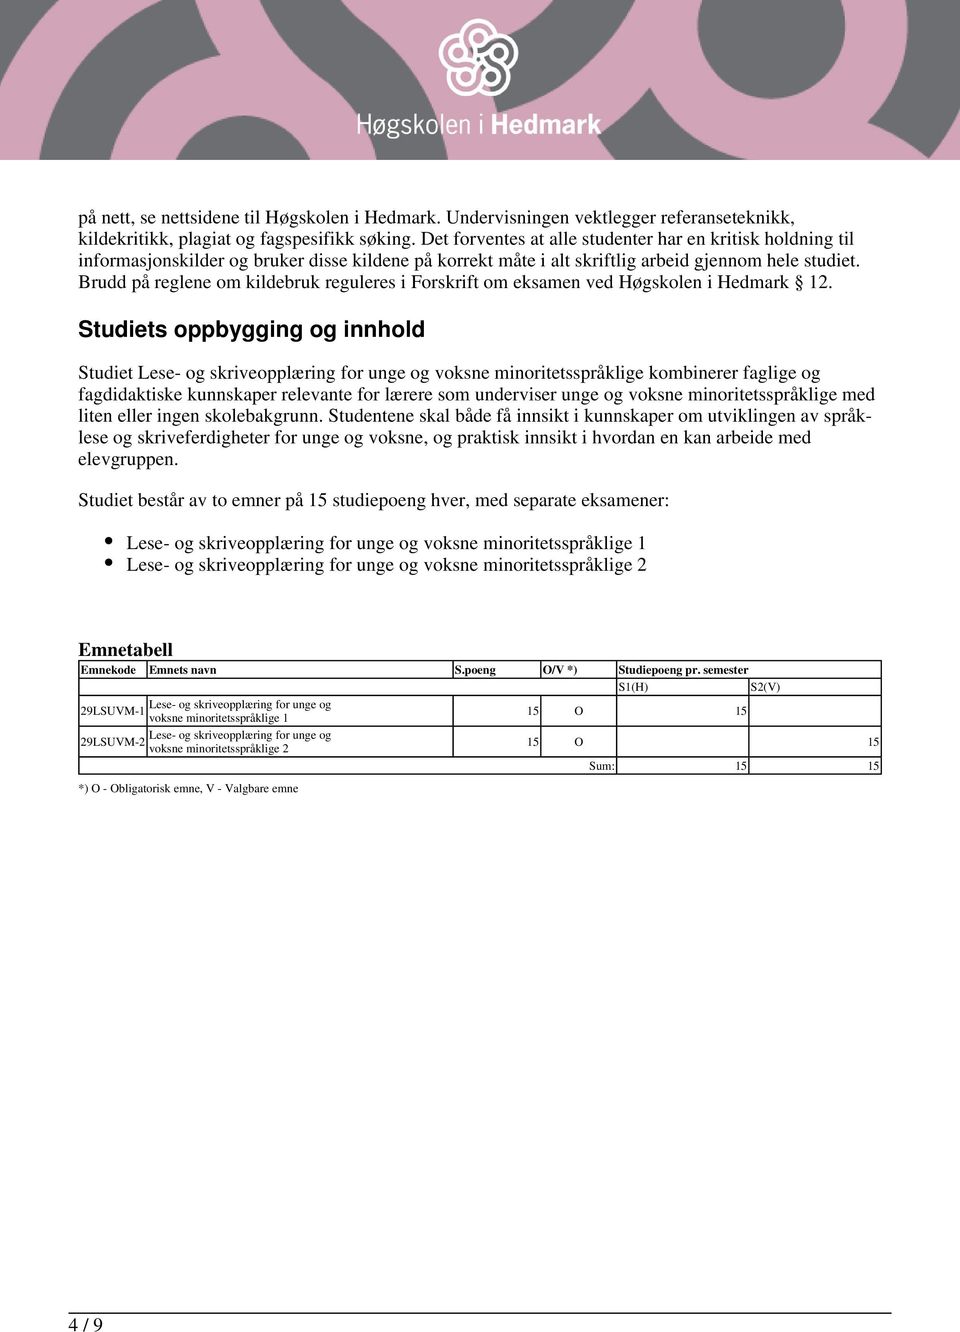 Brudd på reglene om kildebruk reguleres i Forskrift om eksamen ved Høgskolen i Hedmark 12.